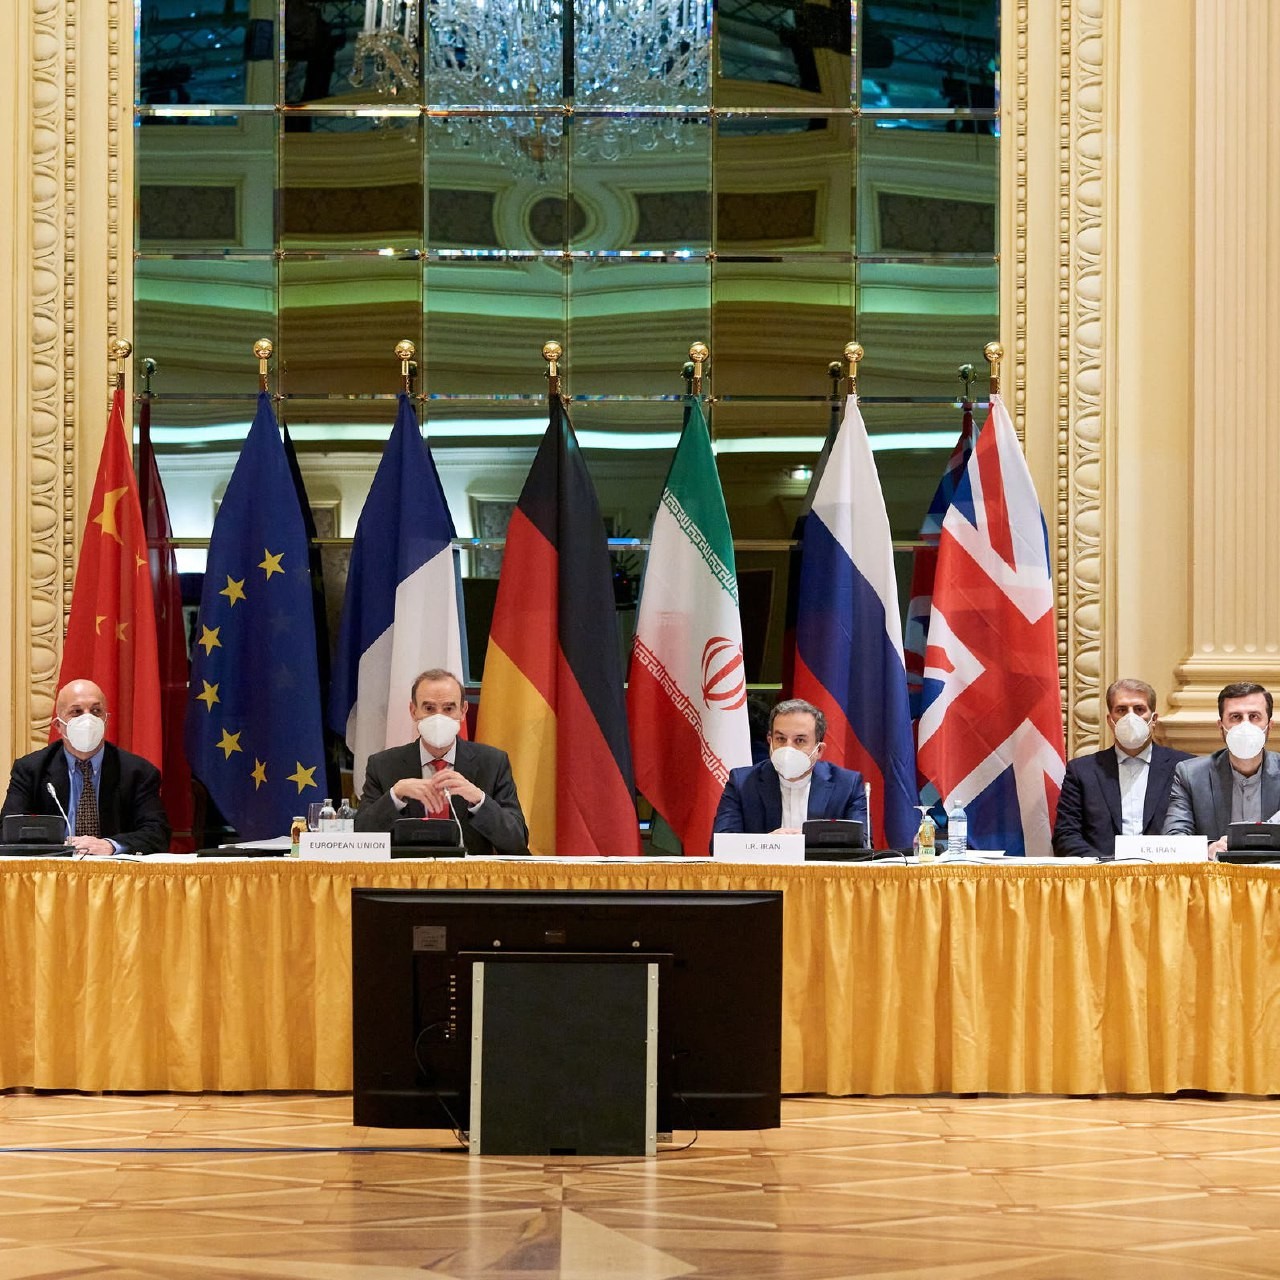 المتحدث باسم وزارة الخارجية الإيرانية سعيد خطيب زادة قال إنه تم تحقيق تقدم في محادثات فيينا لإحياء الاتفاق النووي